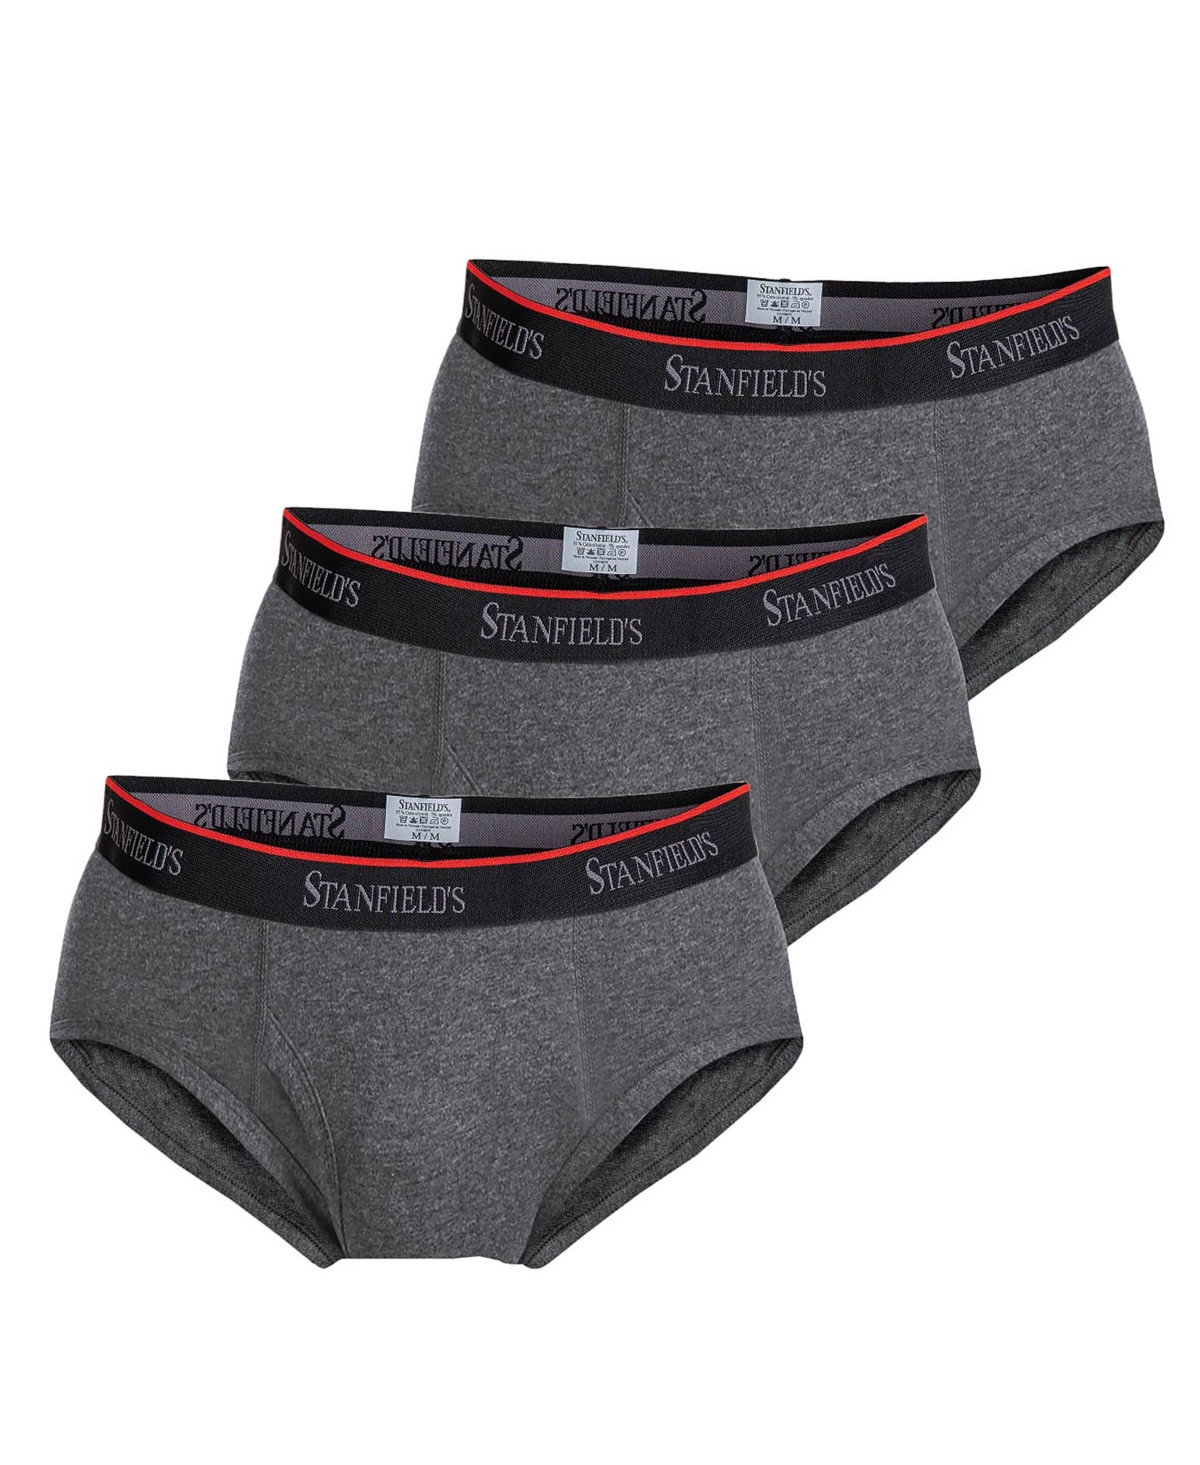 Cotton Stretch Men's 3 Pack Brief Underwear - Graphite